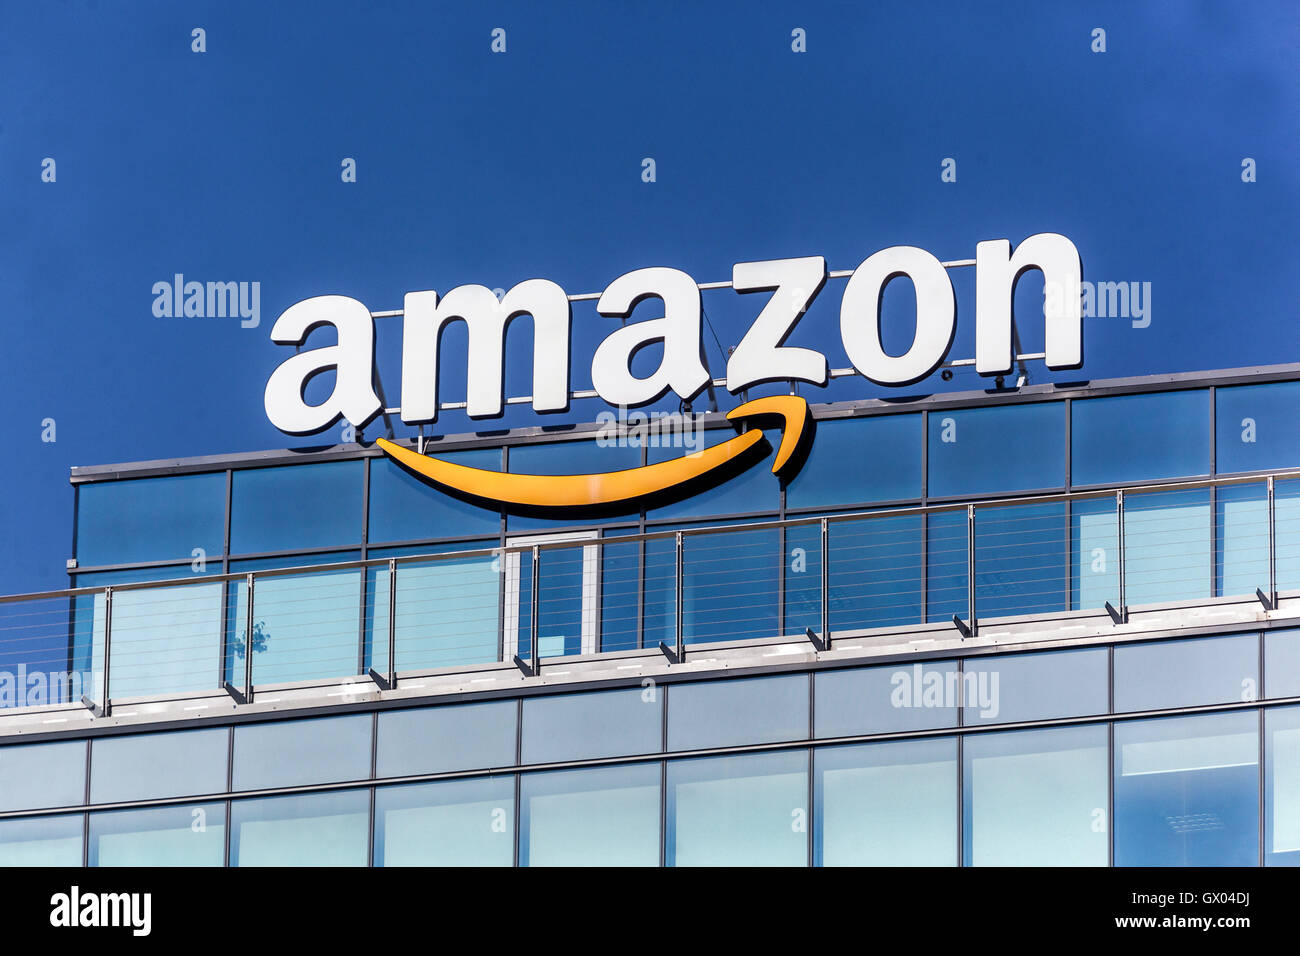 Amazon logo smile on building Stock Photo